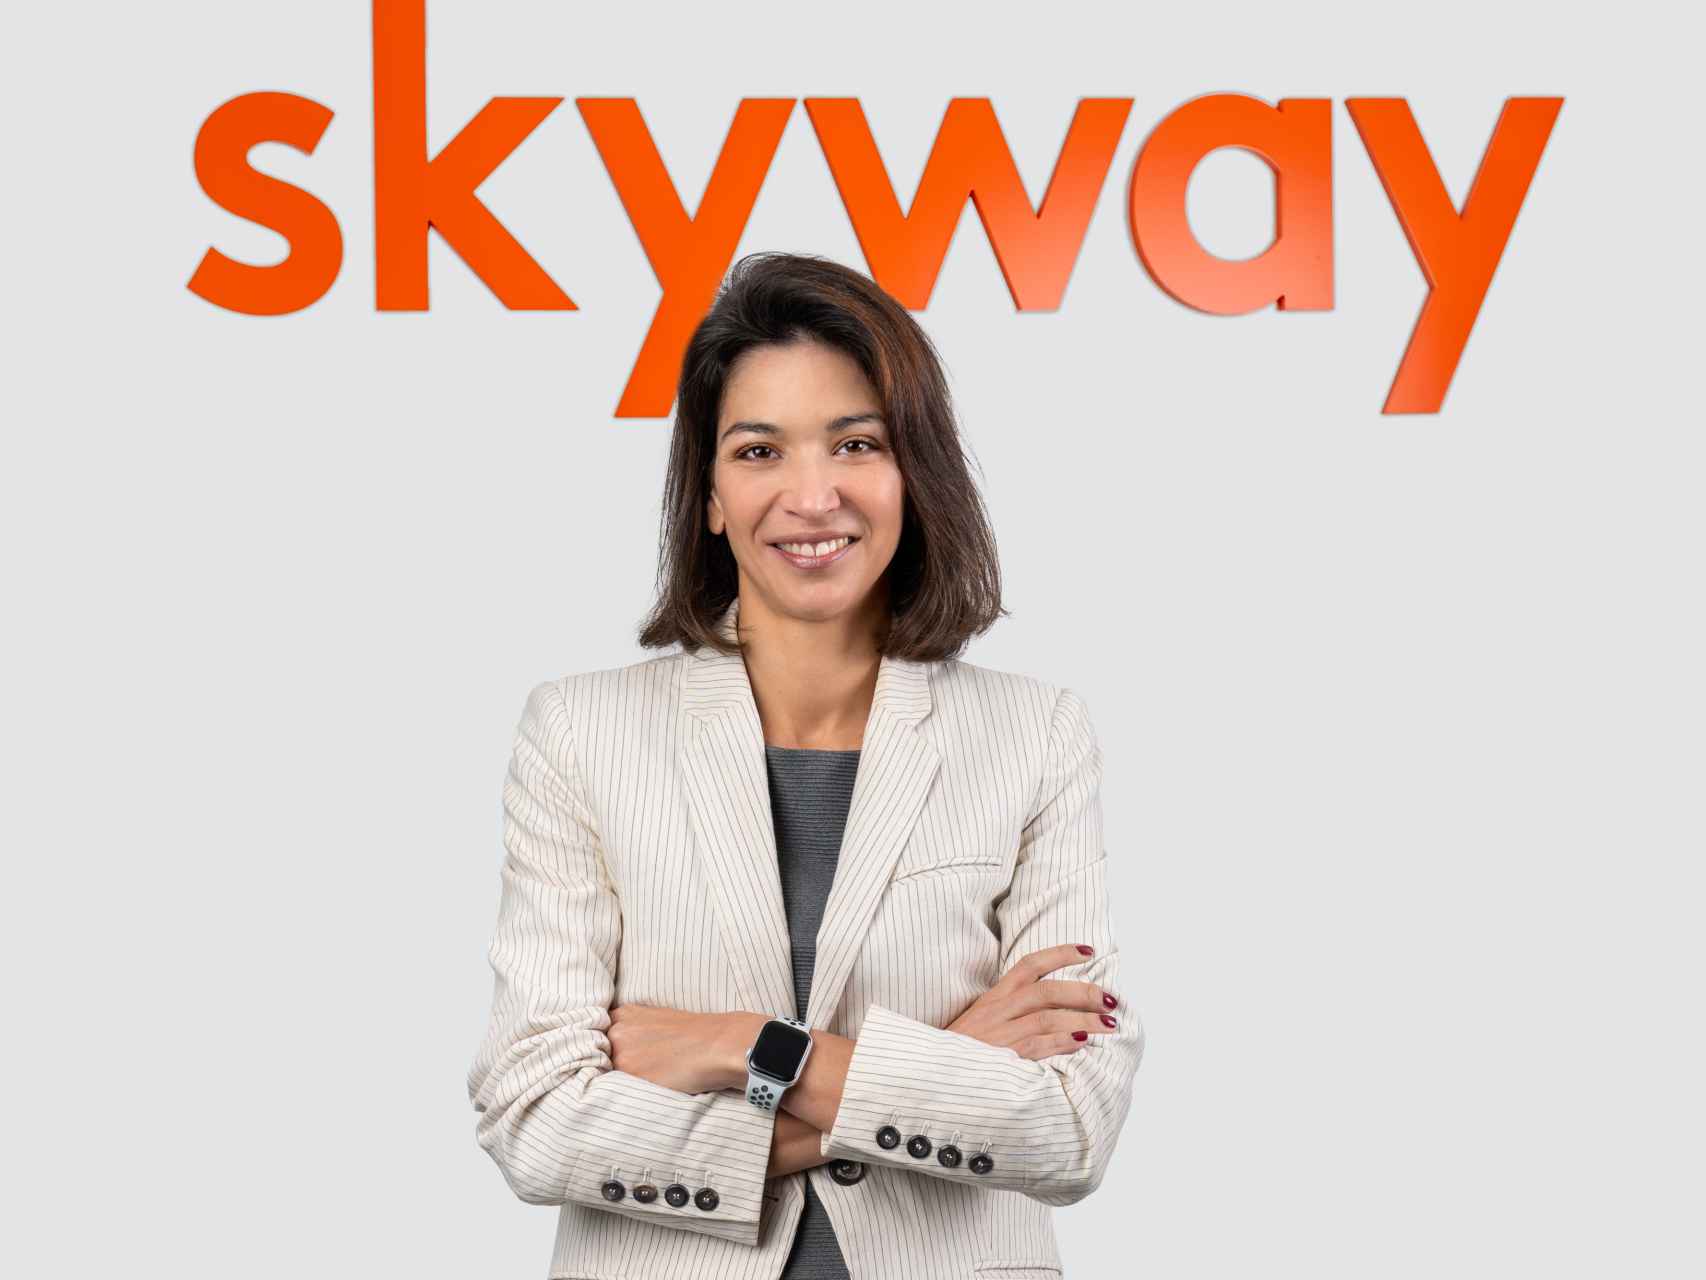 La directora general de Skyway posa con el logo de la compañía.